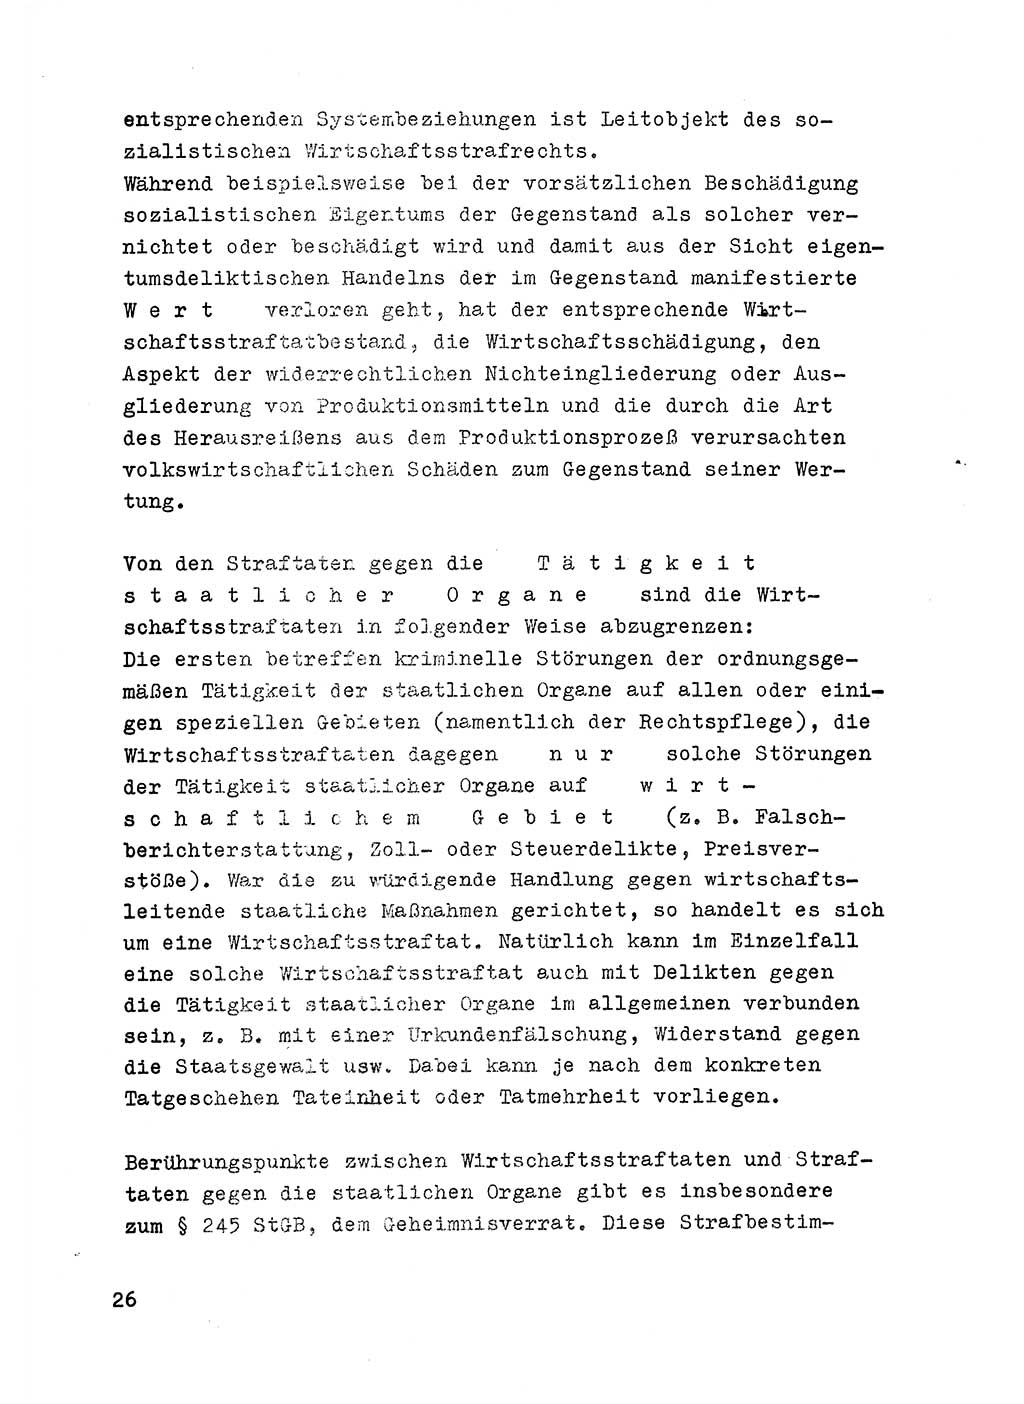 Strafrecht der DDR (Deutsche Demokratische Republik), Besonderer Teil, Lehrmaterial, Heft 6 1970, Seite 26 (Strafr. DDR BT Lehrmat. H. 6 1970, S. 26)